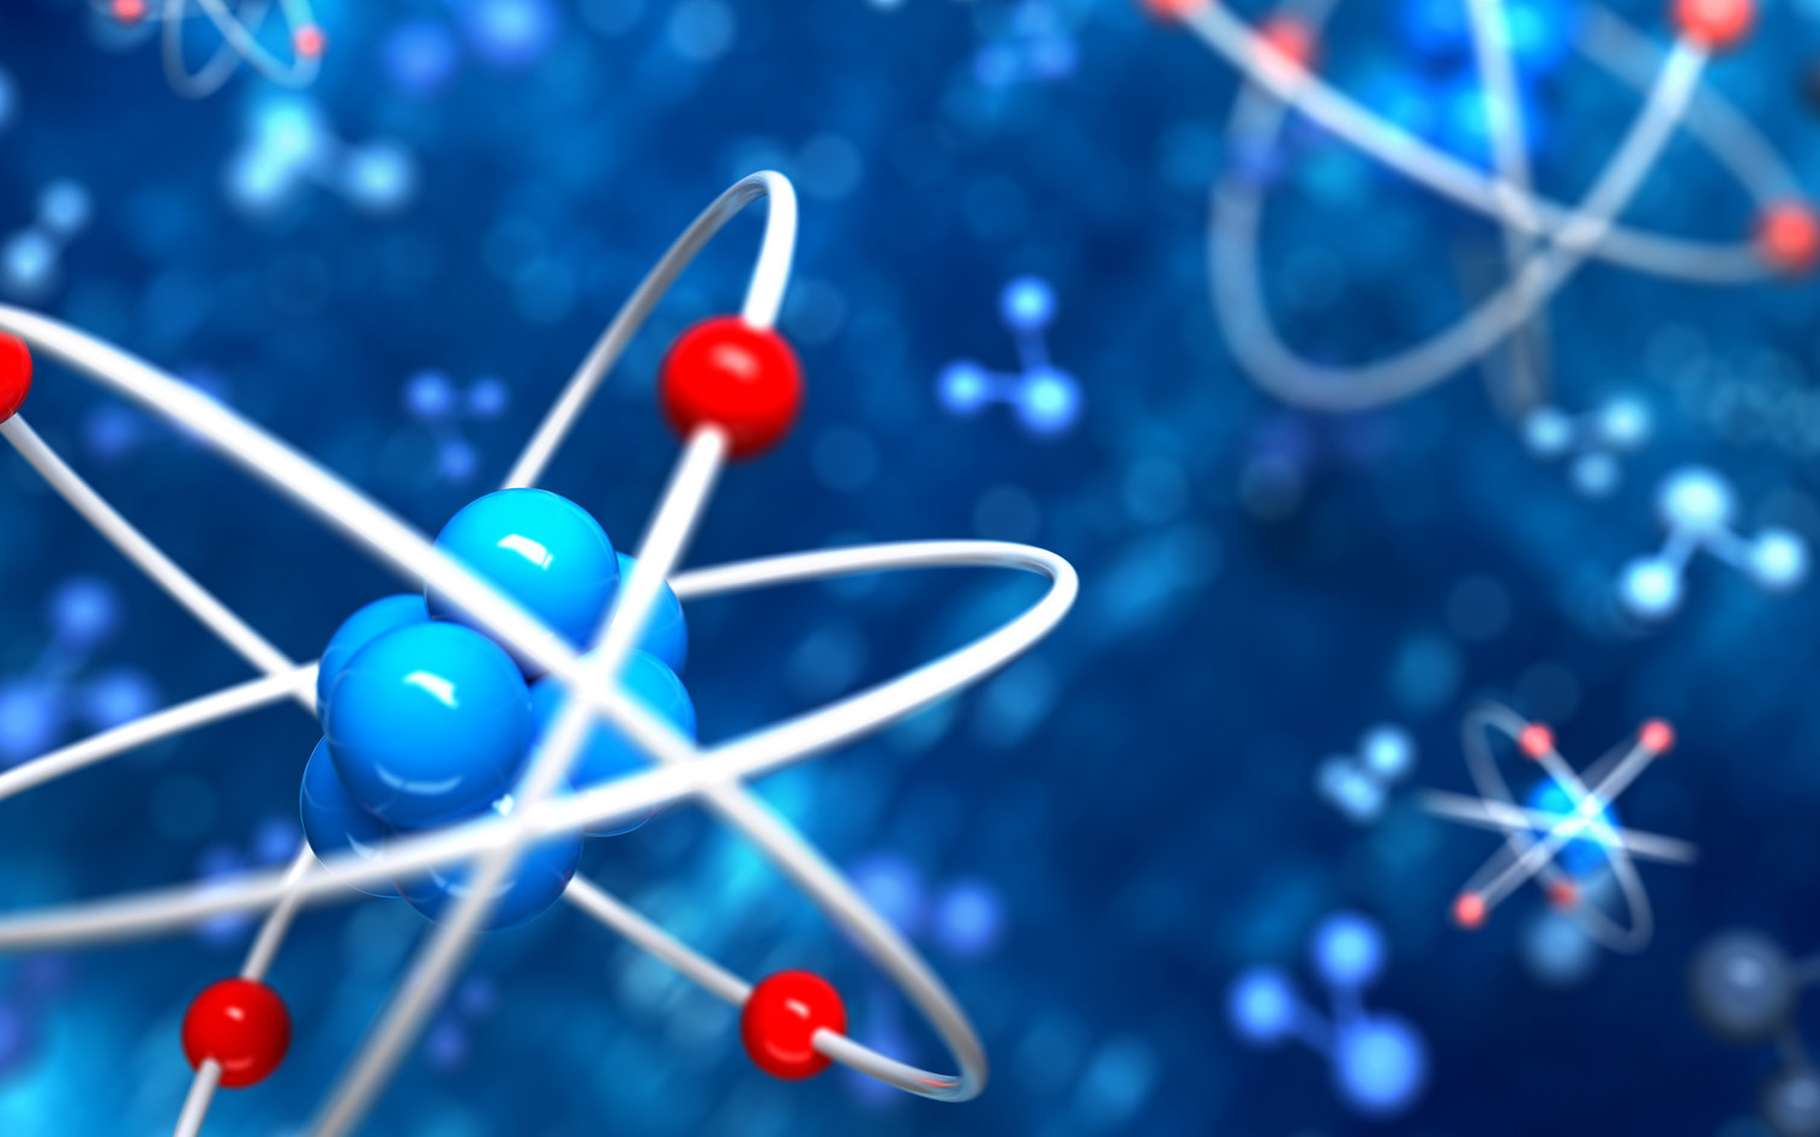 Une représentation symbolique du modèle de l’atome. © Leigh Prather, Shutterstock